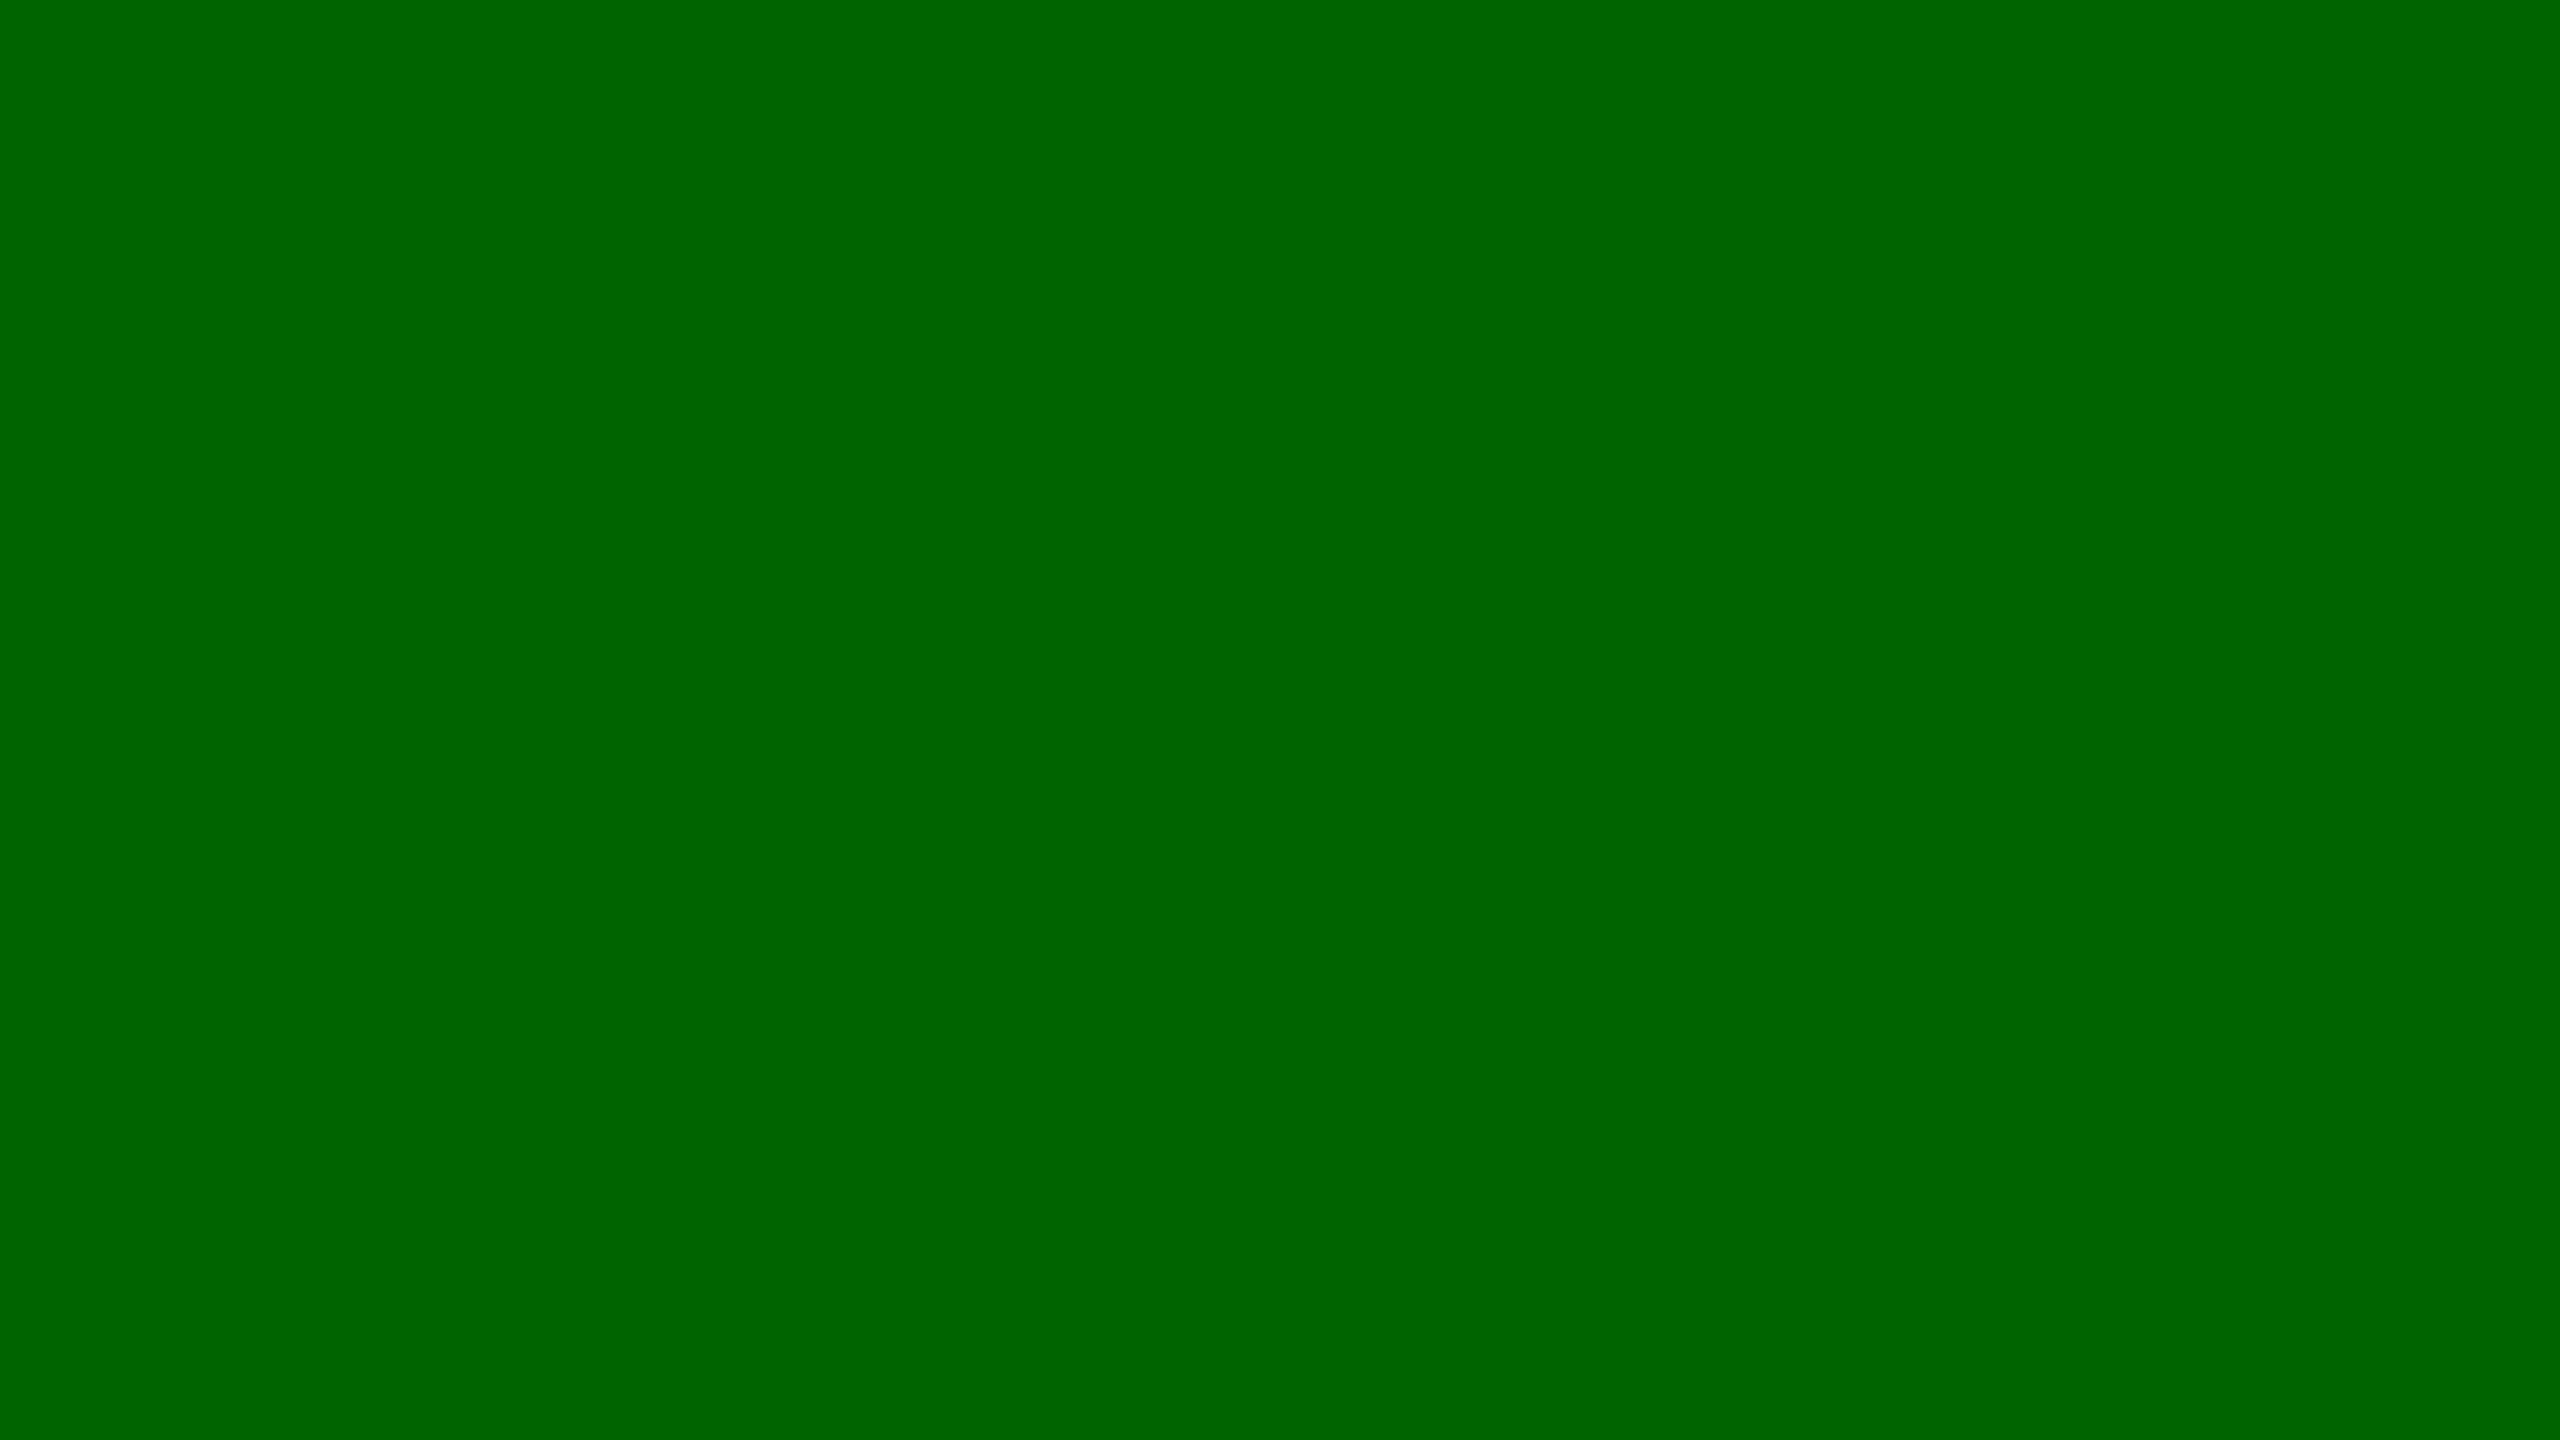 Dark Green Background Galleryhip The